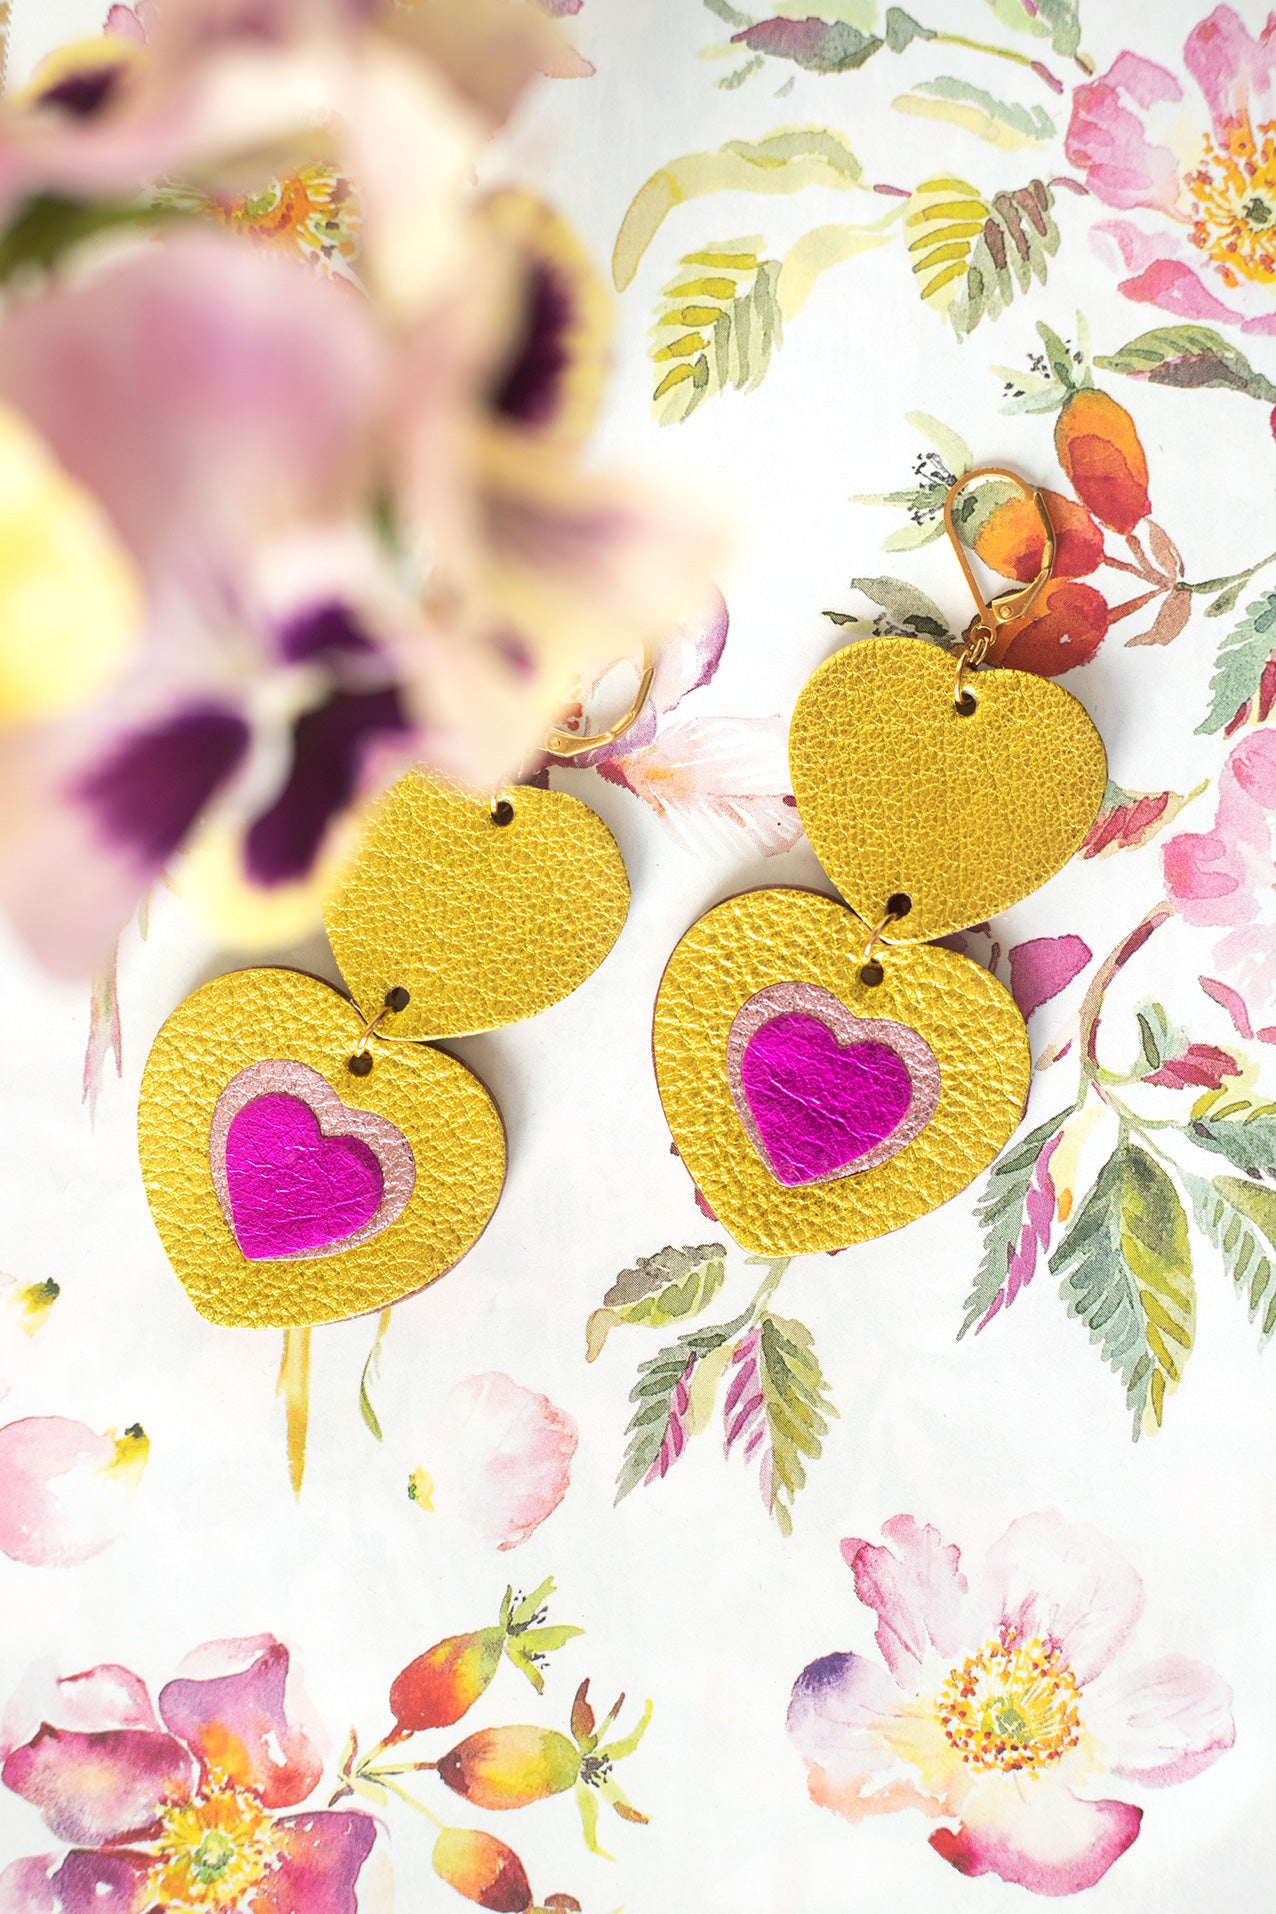 Double Hearts earrings - metallic yellow leather and metallic fuchsia